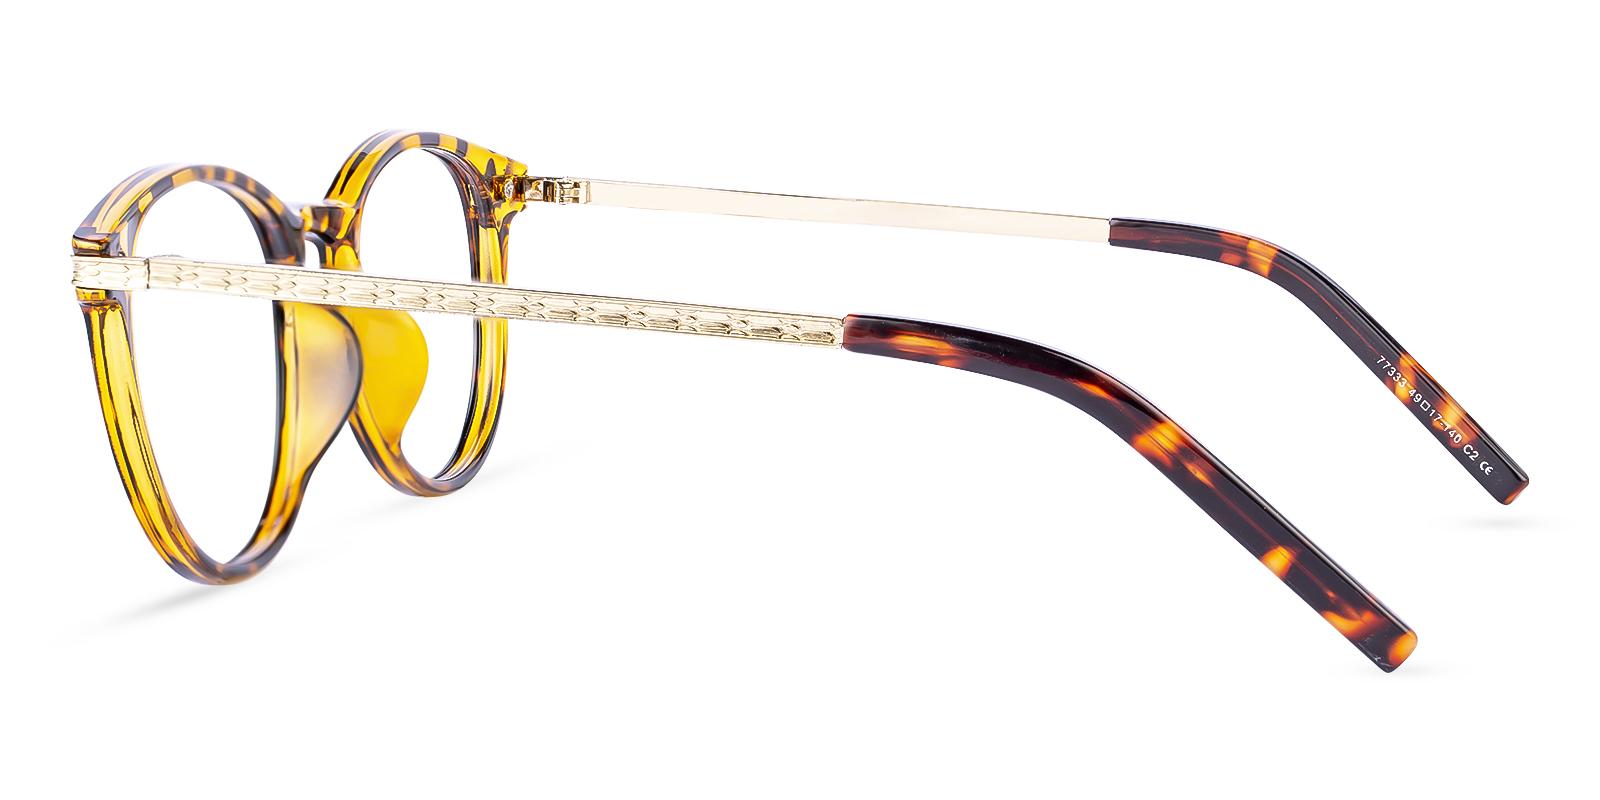 Callie Tortoise Combination Eyeglasses , UniversalBridgeFit Frames from ABBE Glasses